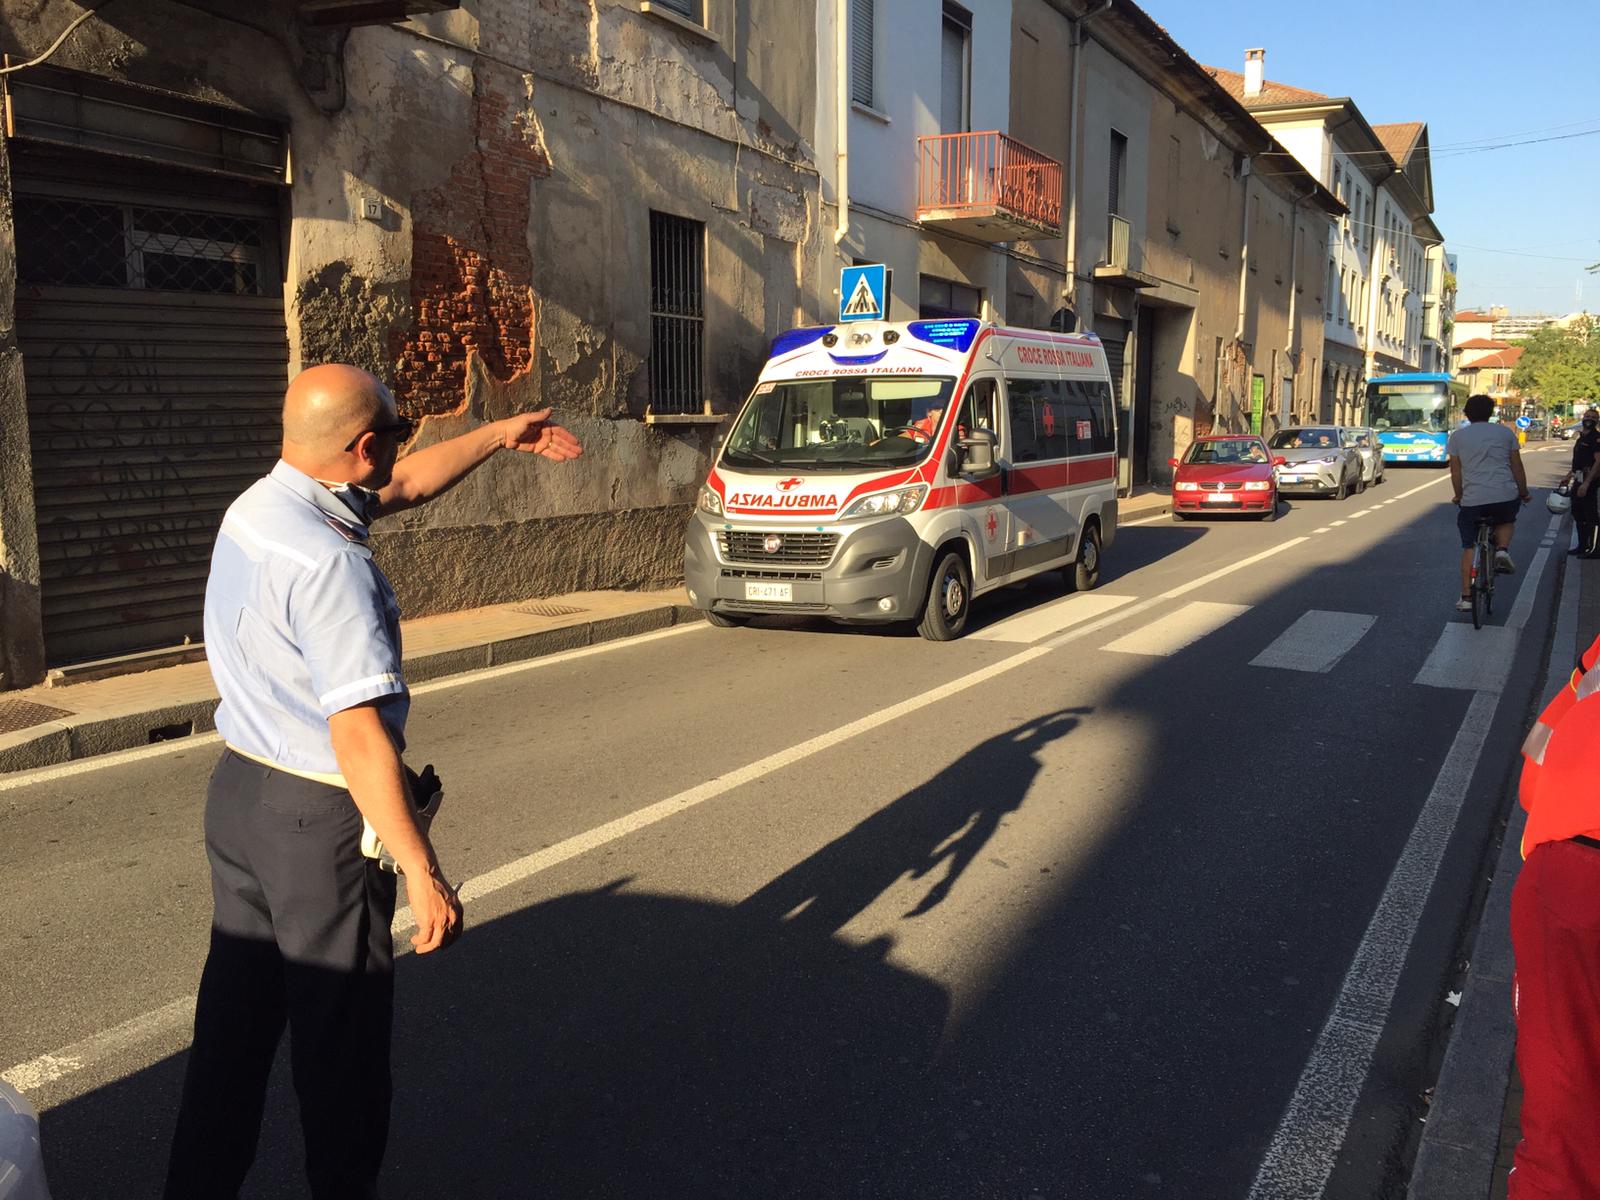 Superlavoro per le ambulanze oggi a Saronno: 2 scontri auto-moto, ciclista investita, intossicazione, malori